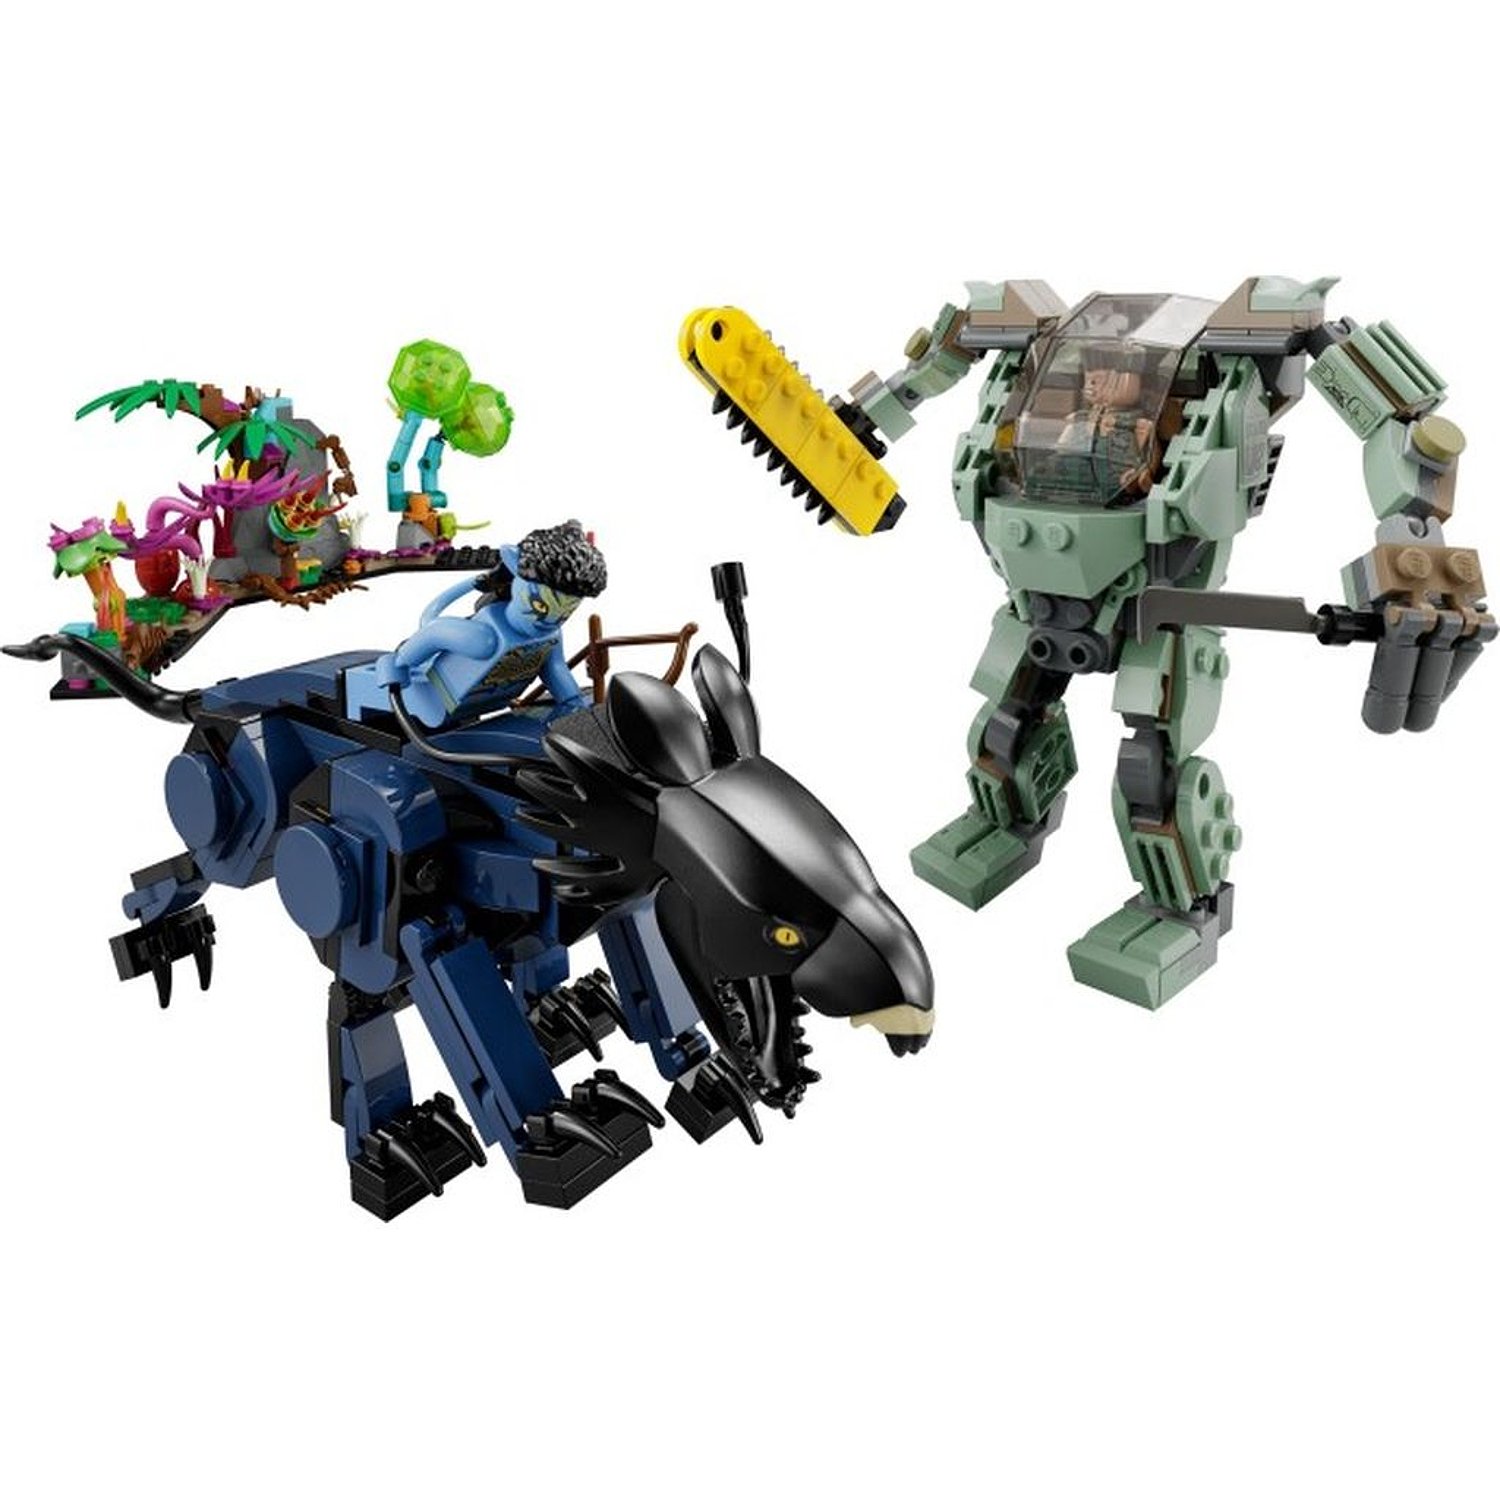 Набор LEGO Avatar 75571 Нейтири и танатор против Куоритча в силовом скафандре